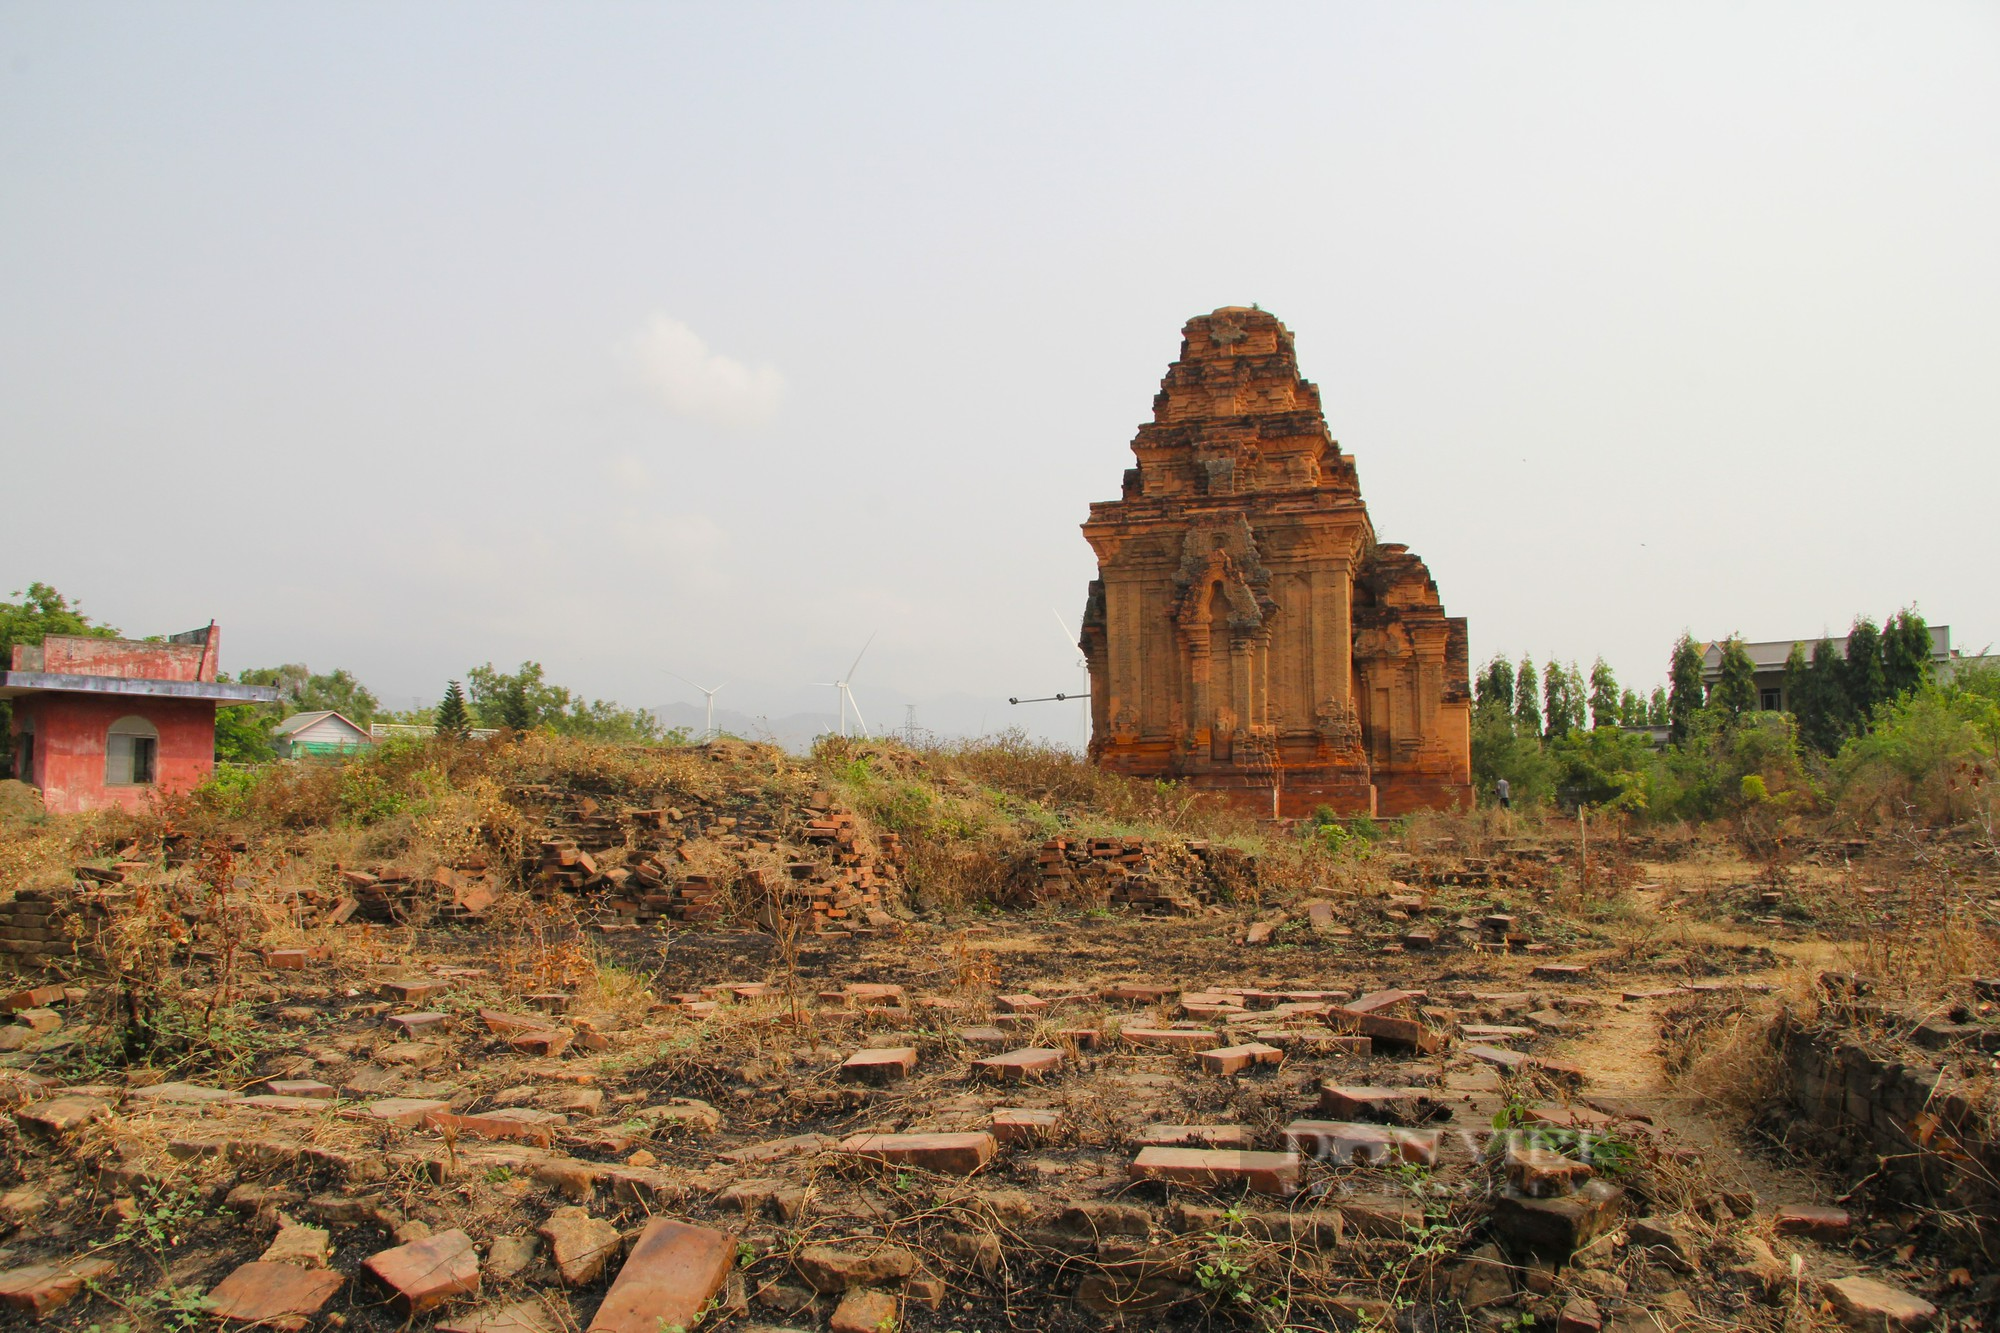 Bí ẩn tháp Chăm cổ “bị bỏ rơi” lại là nơi lưu giữ bảo vật Quốc gia có một không hai ở Ninh Thuận - Ảnh 4.